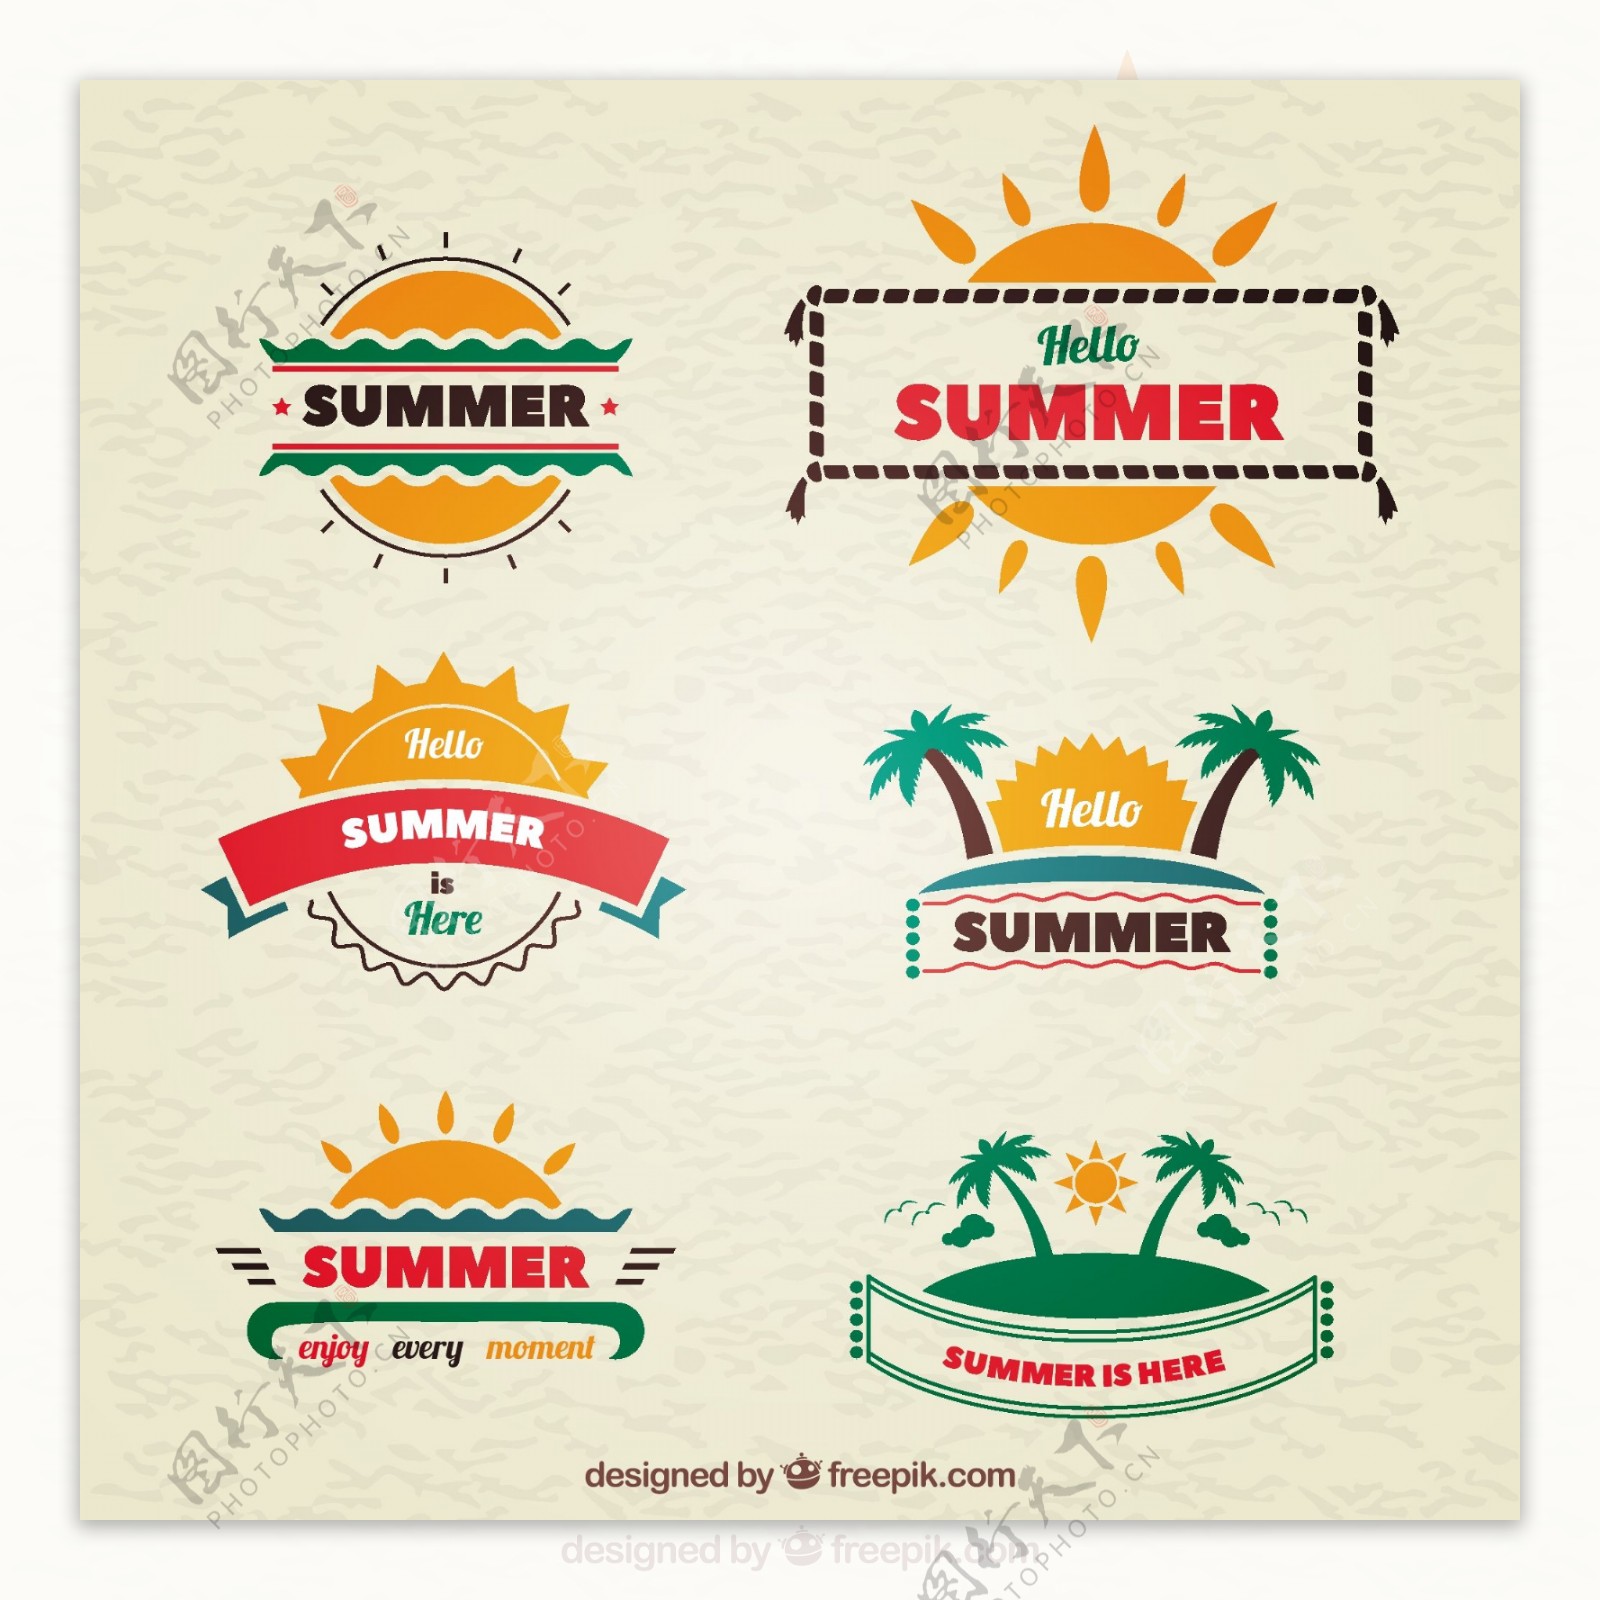 六个可爱的夏天标签集